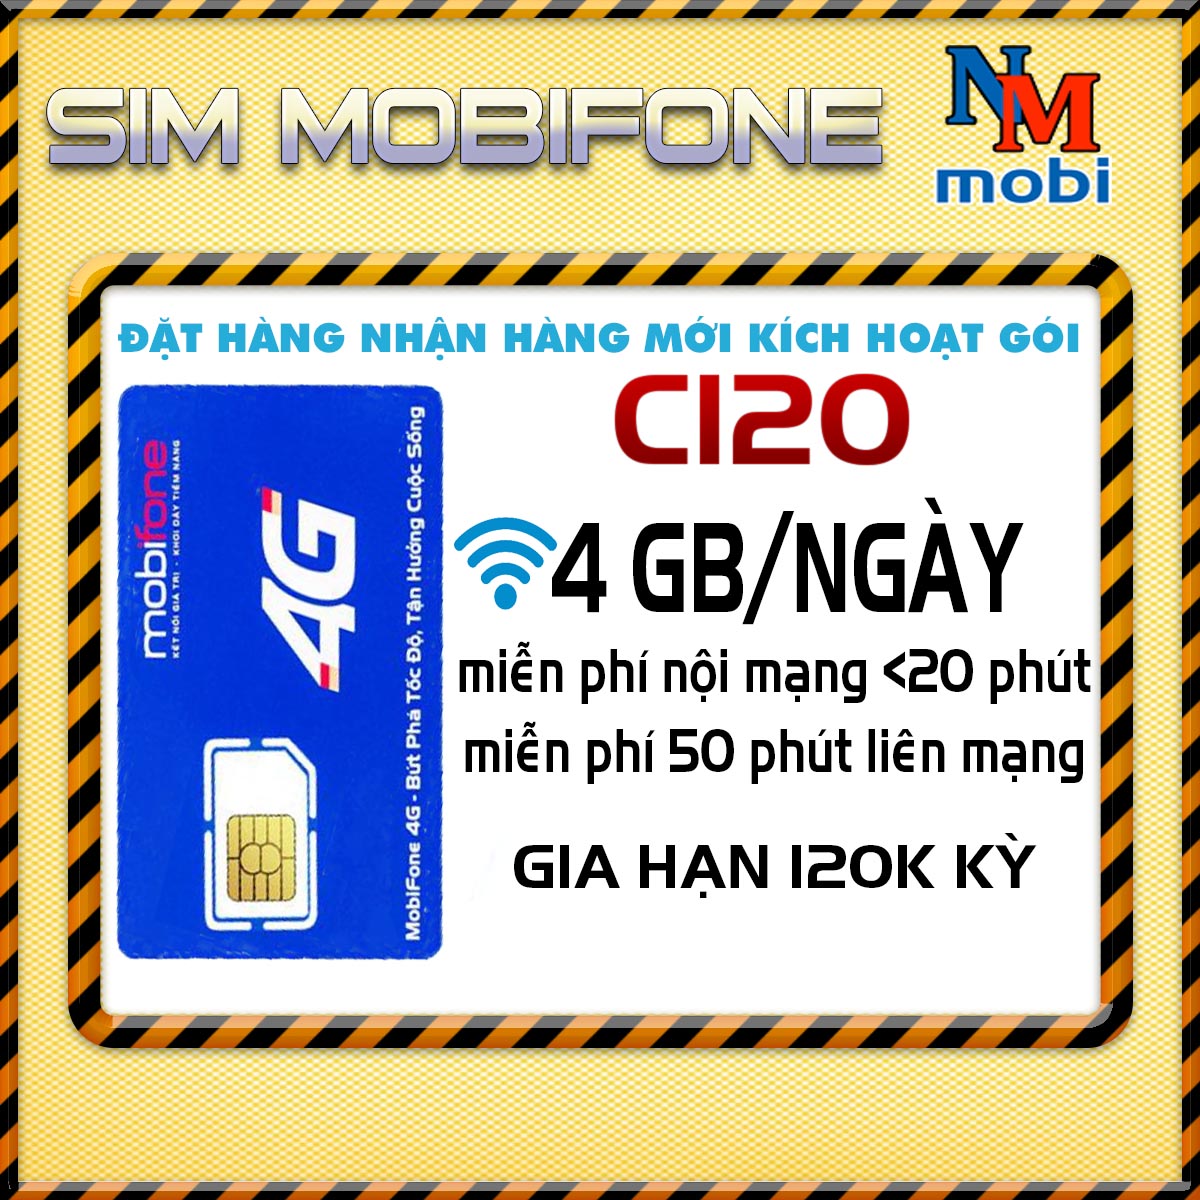 Sim 4G mobifone gói C120 - 4GB Ngày thoải mái gọi nội mạng dưới 20 phút - Hàng Chính Hãng